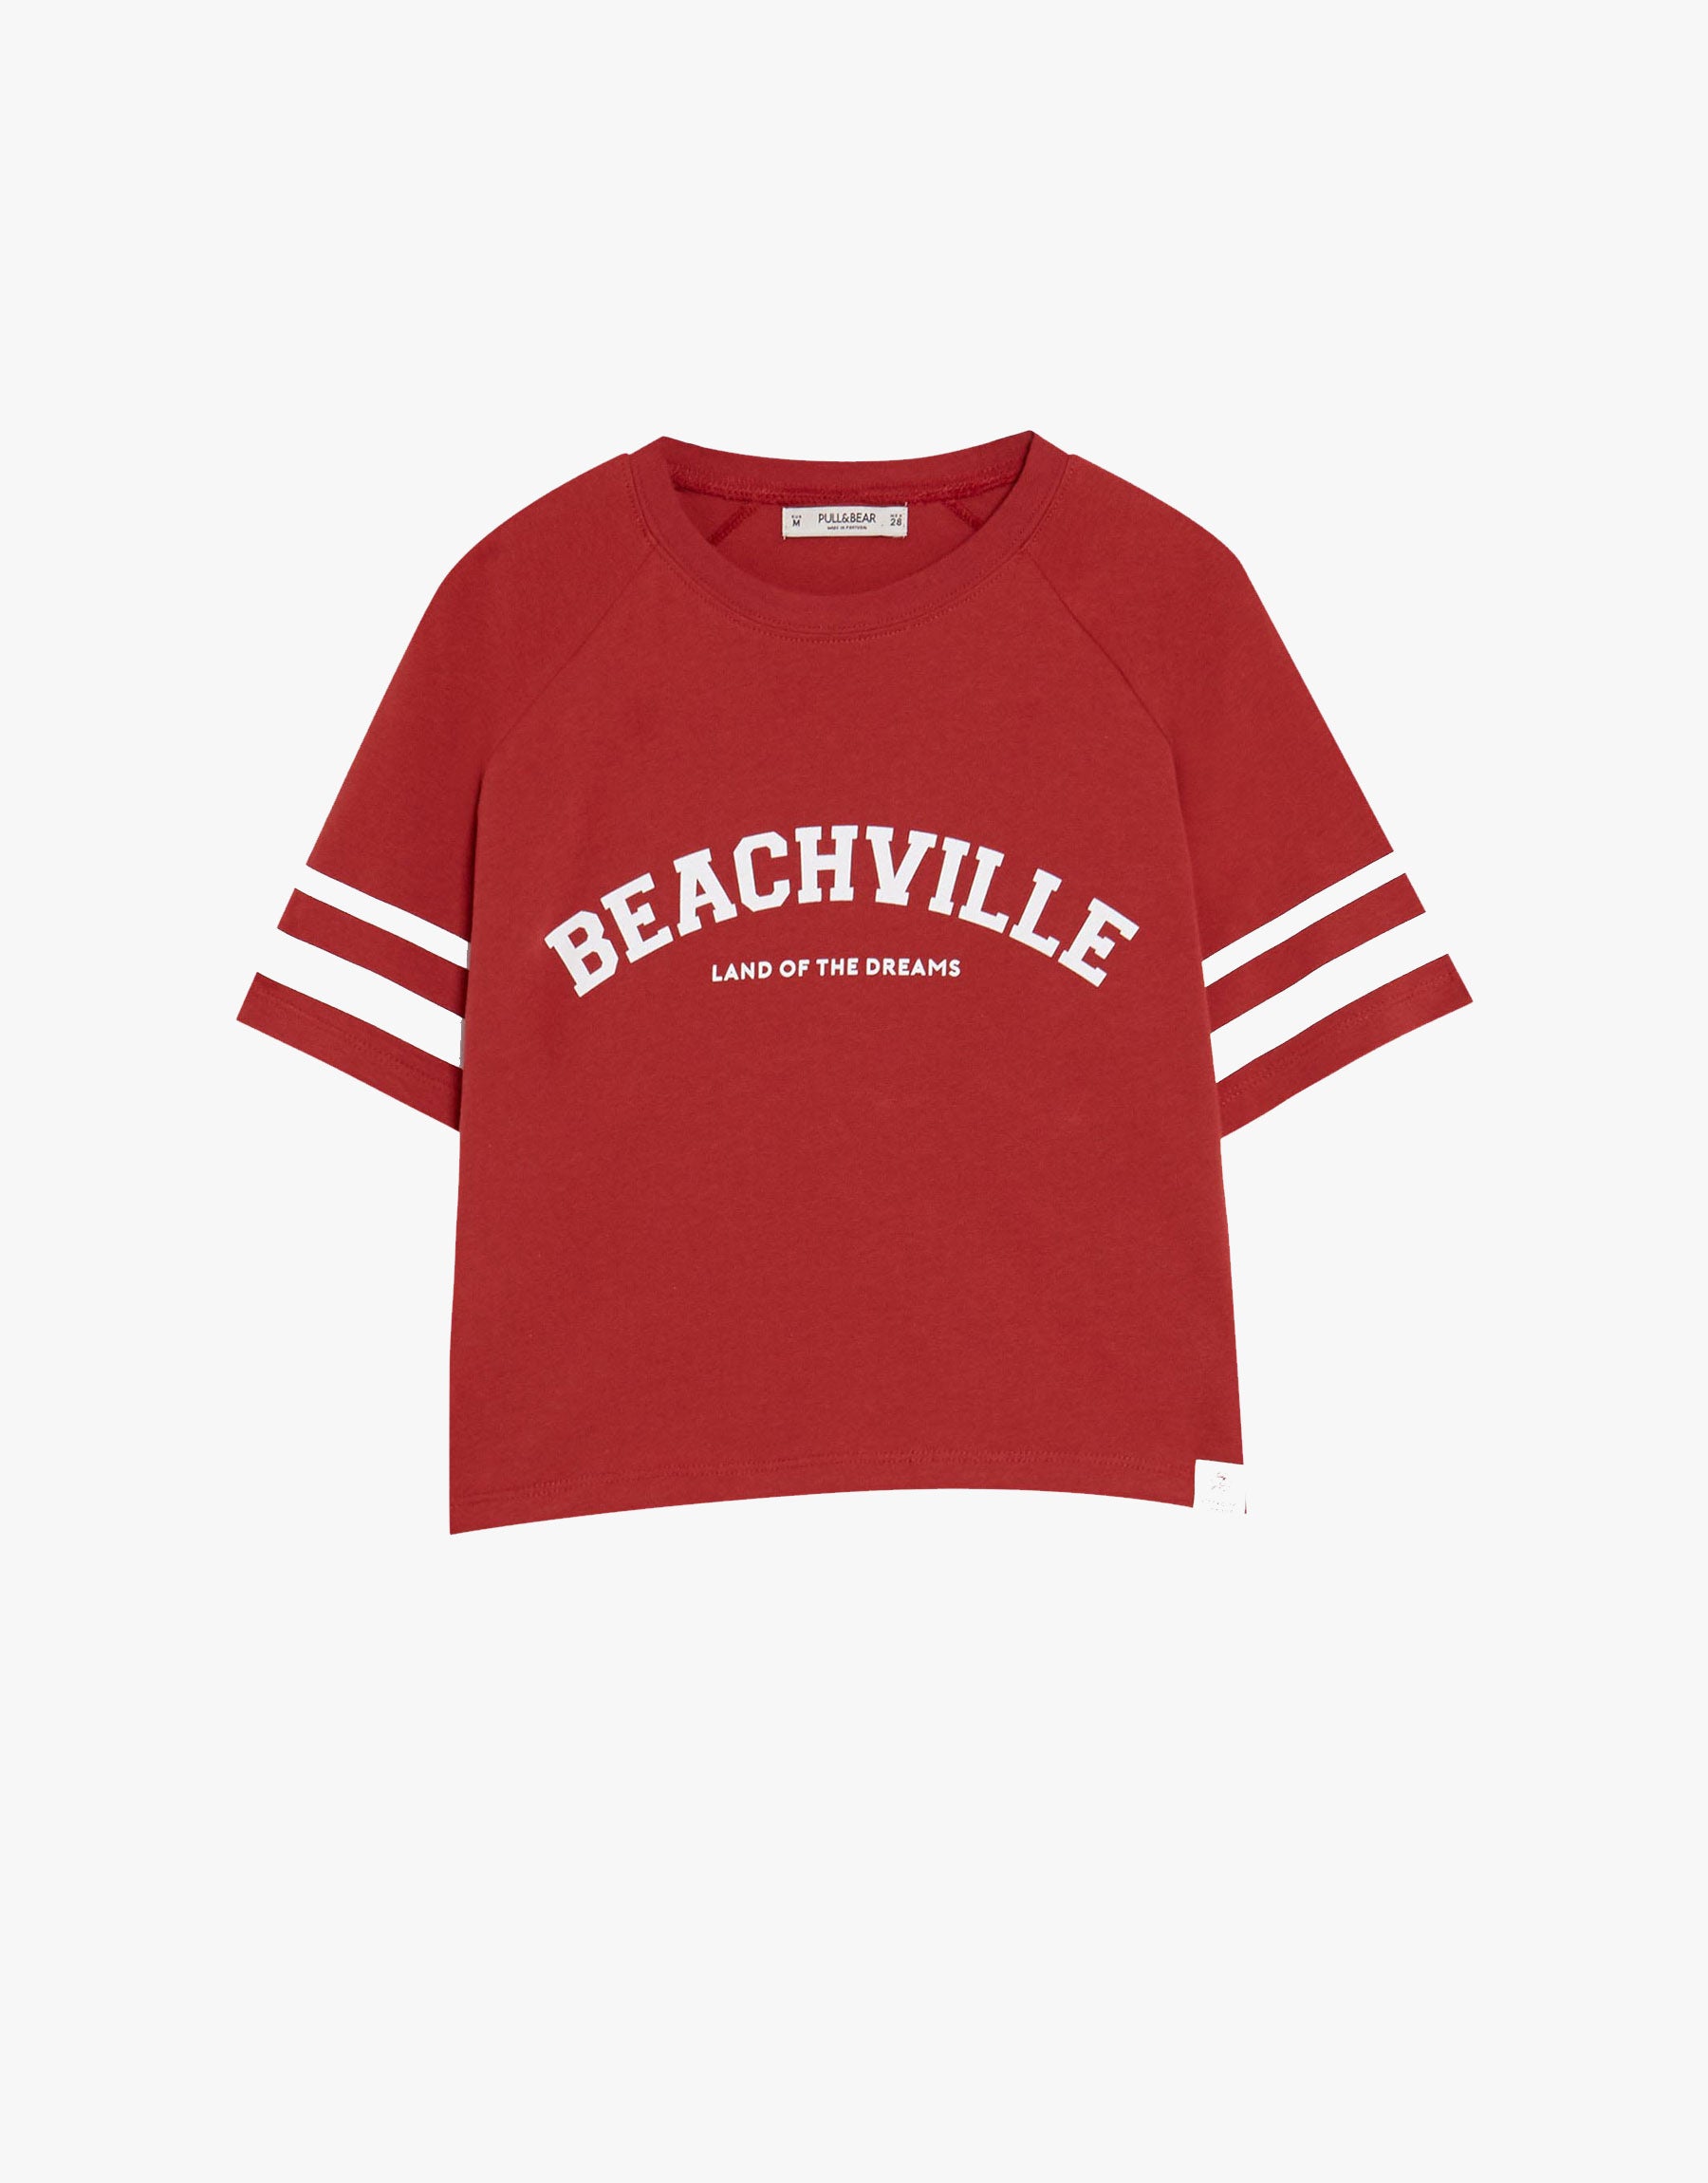 Beach Ville Red T-shirt